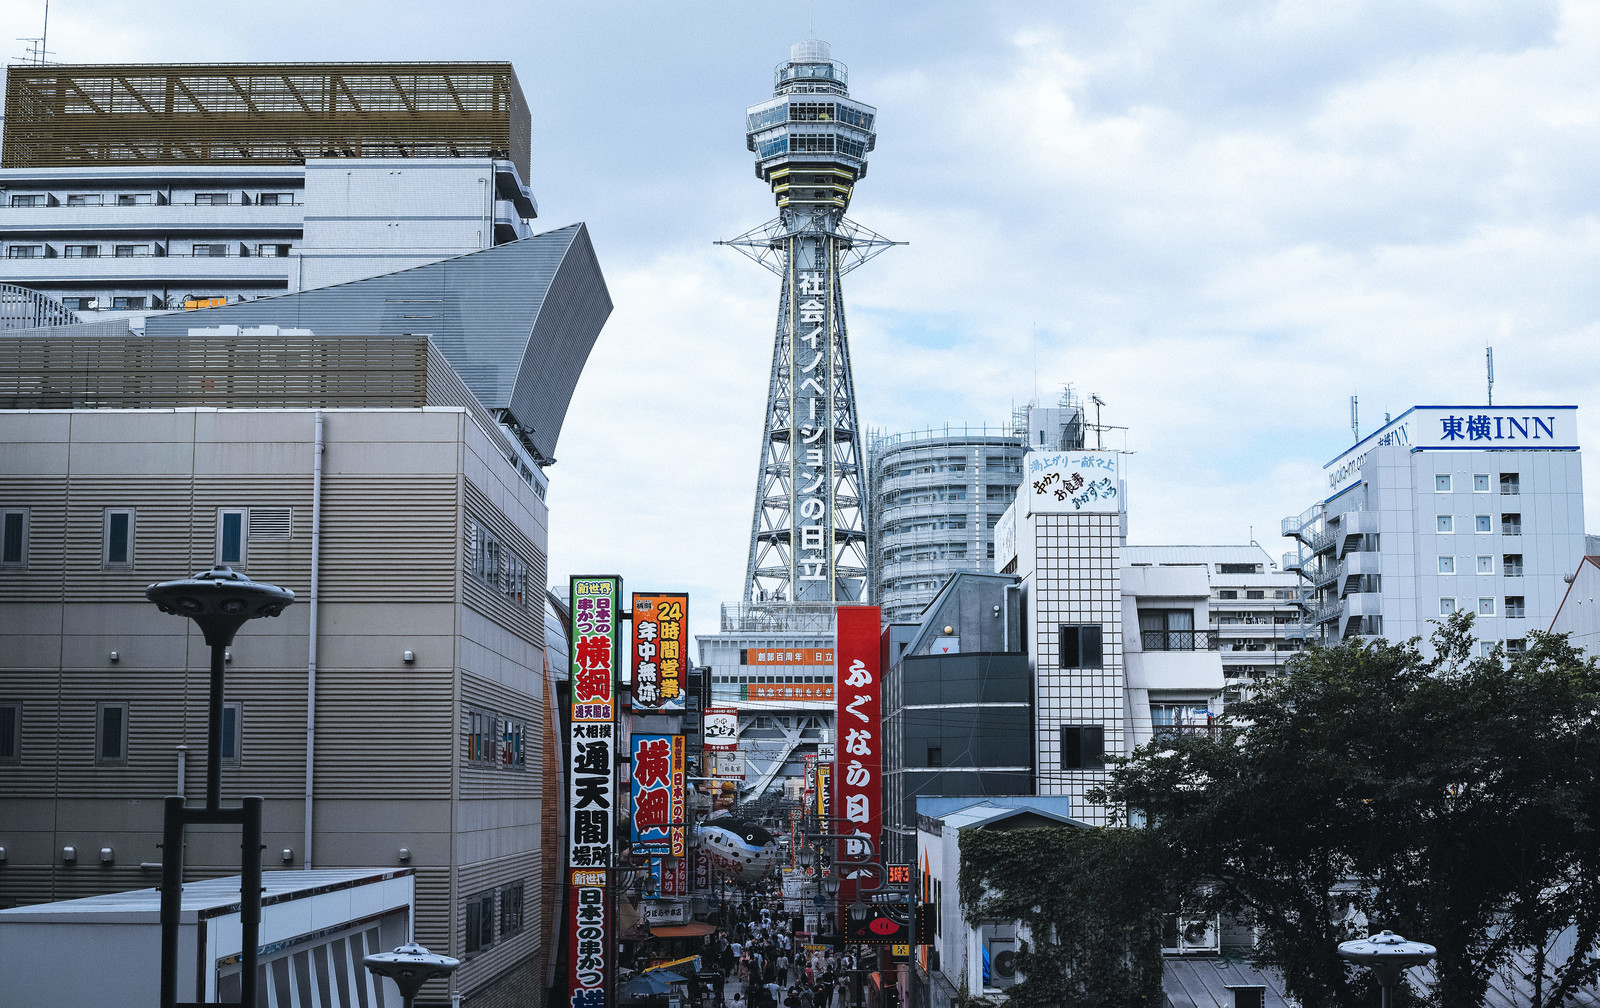 大阪の写真撮影スポット17選 インスタ映えするおしゃれな場所もあり Travelnote トラベルノート